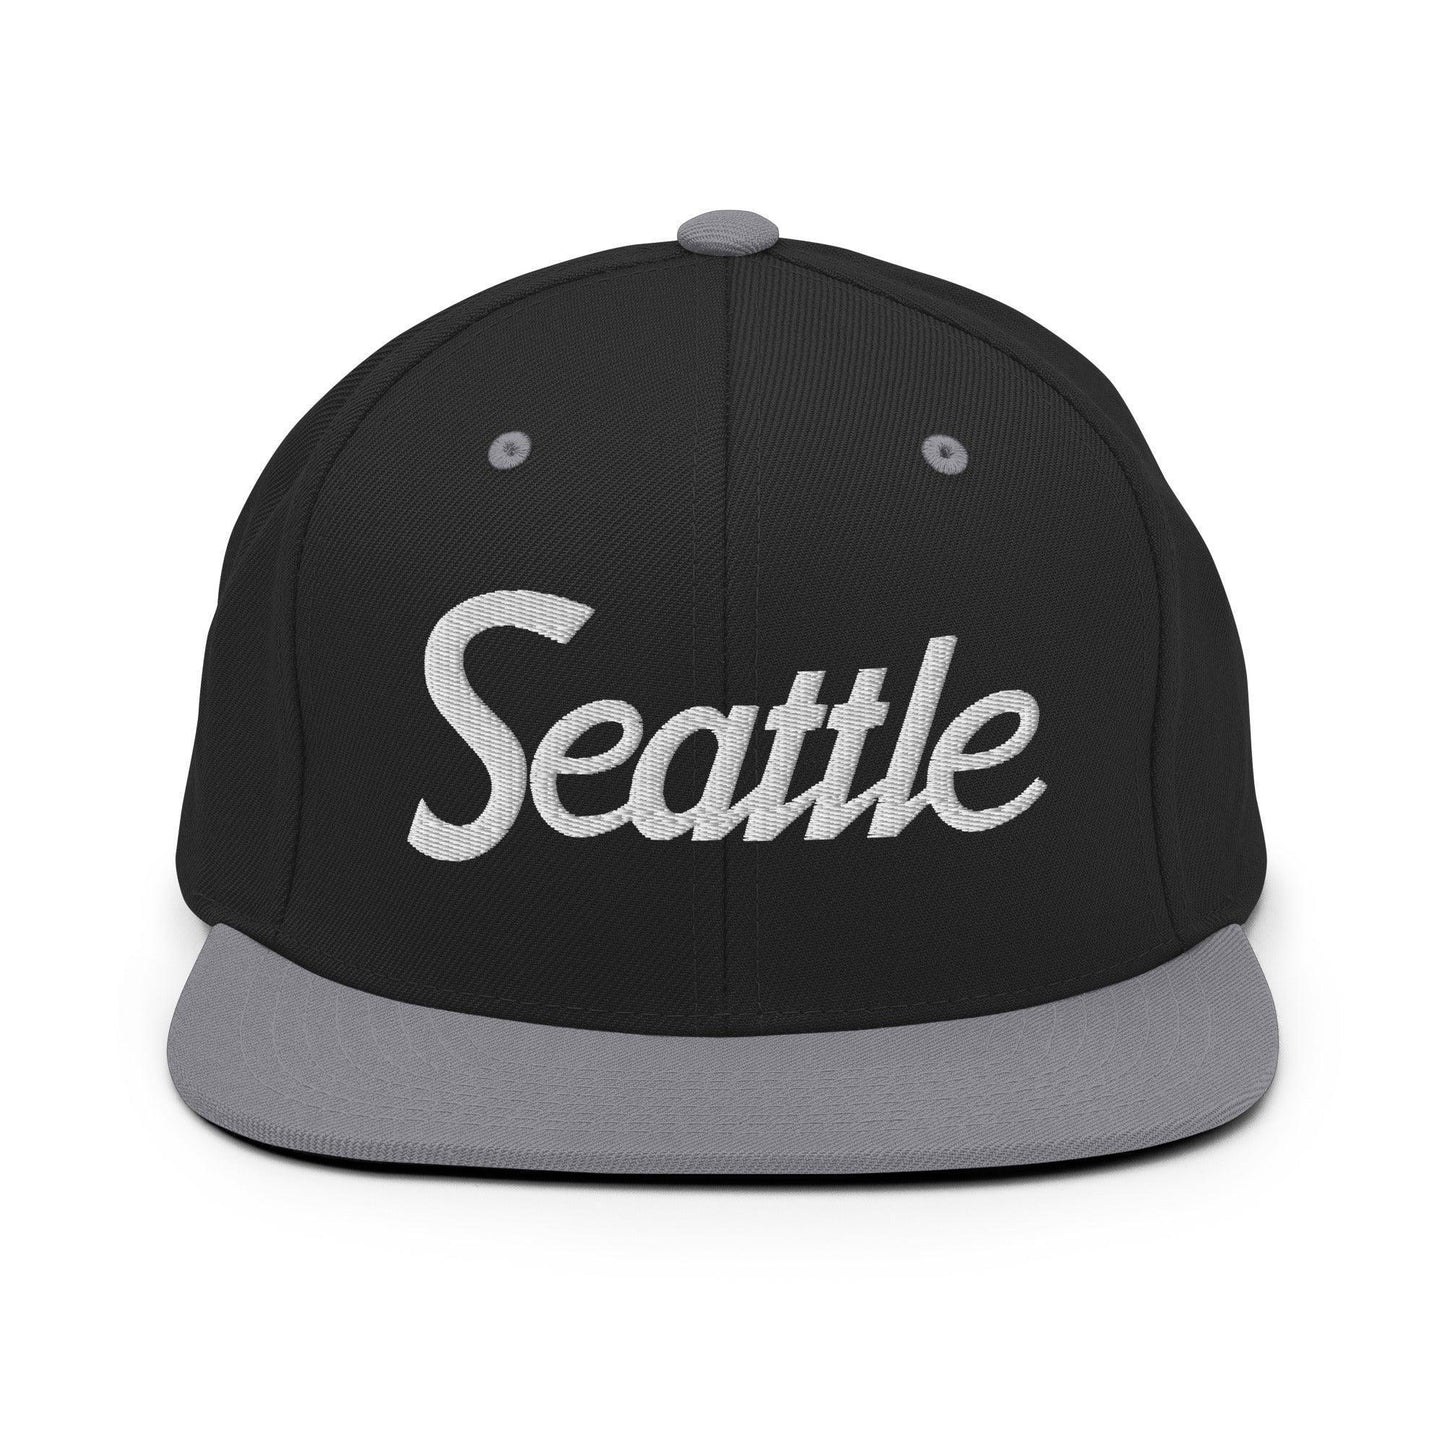 Seattle Script Snapback Hat Black Silver